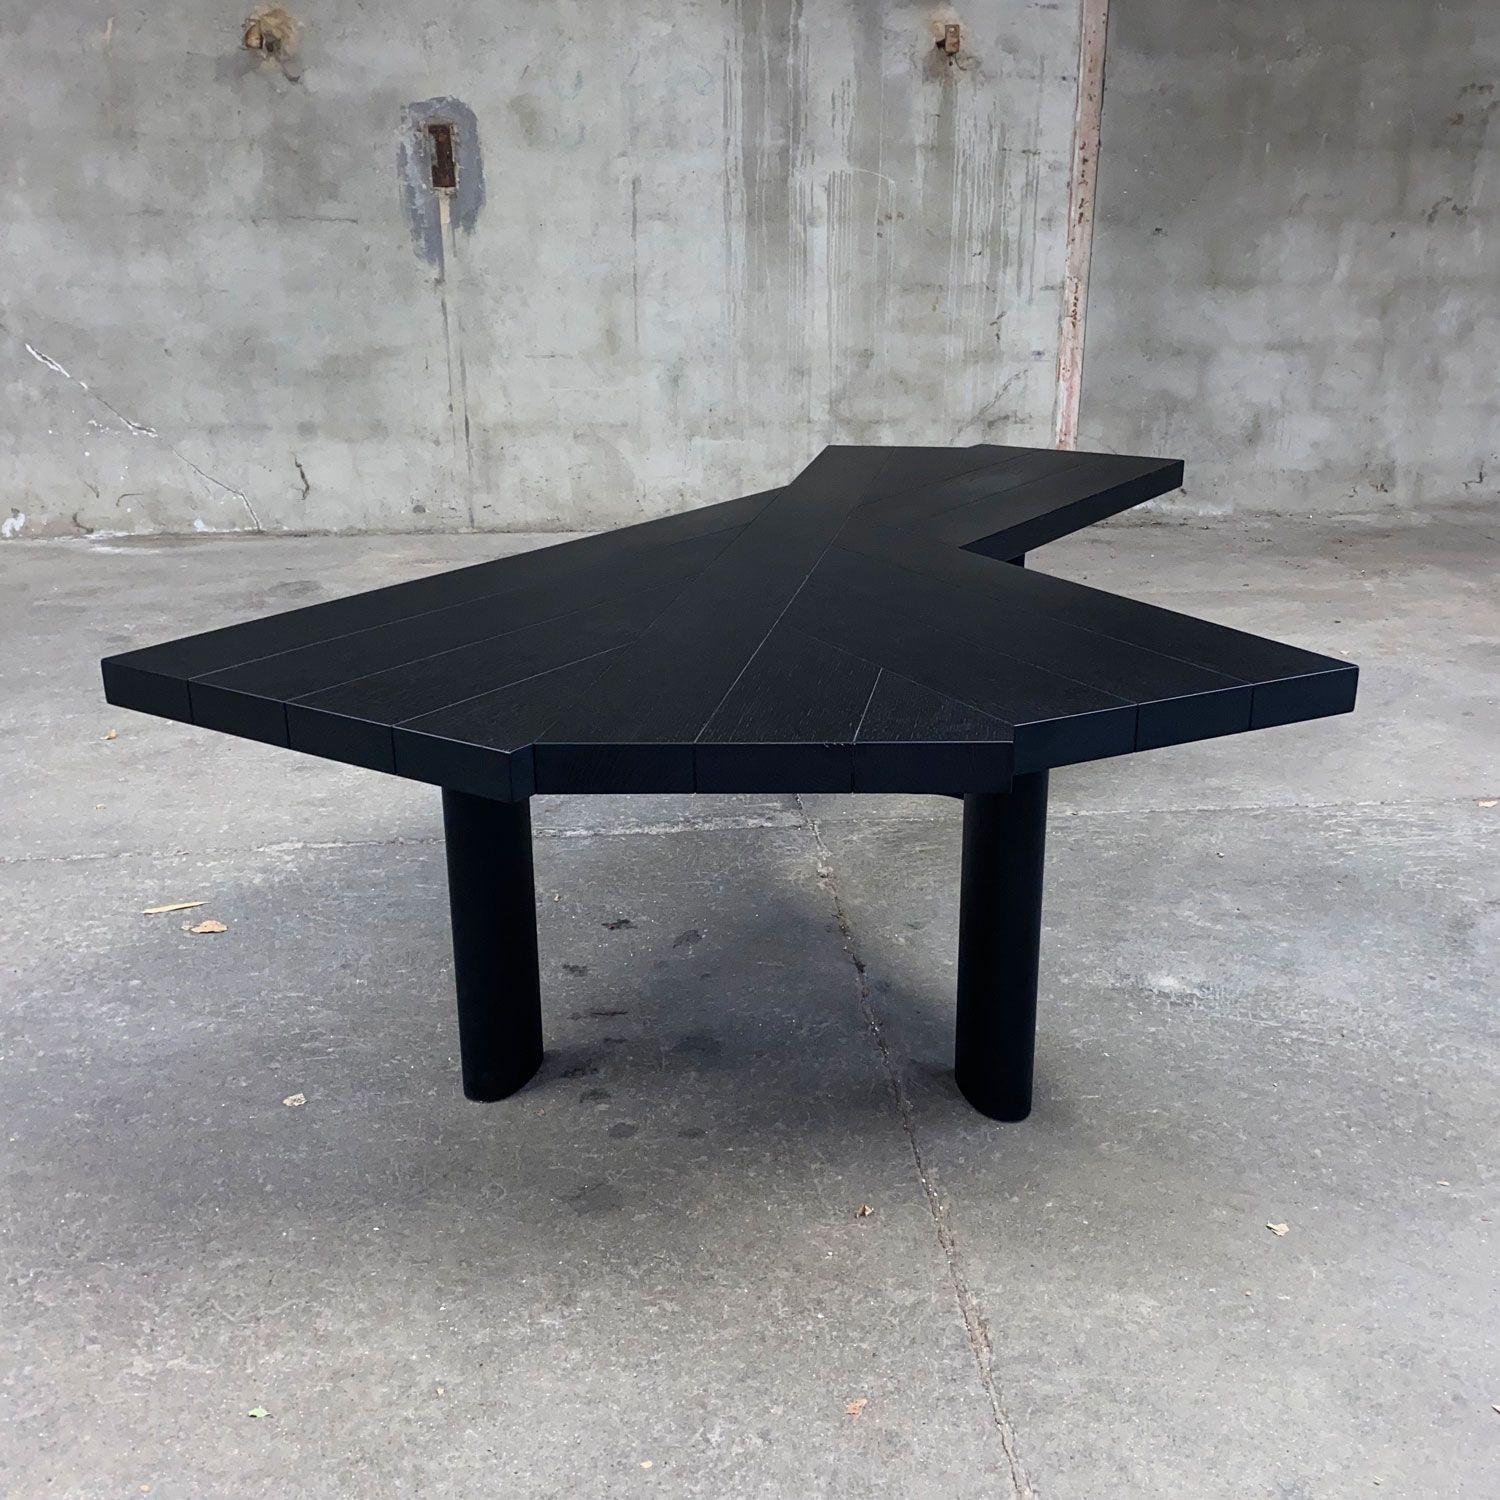 European Black Ventaglio Table by Charlotte Perriand, Cassina Edition, Circa 2010